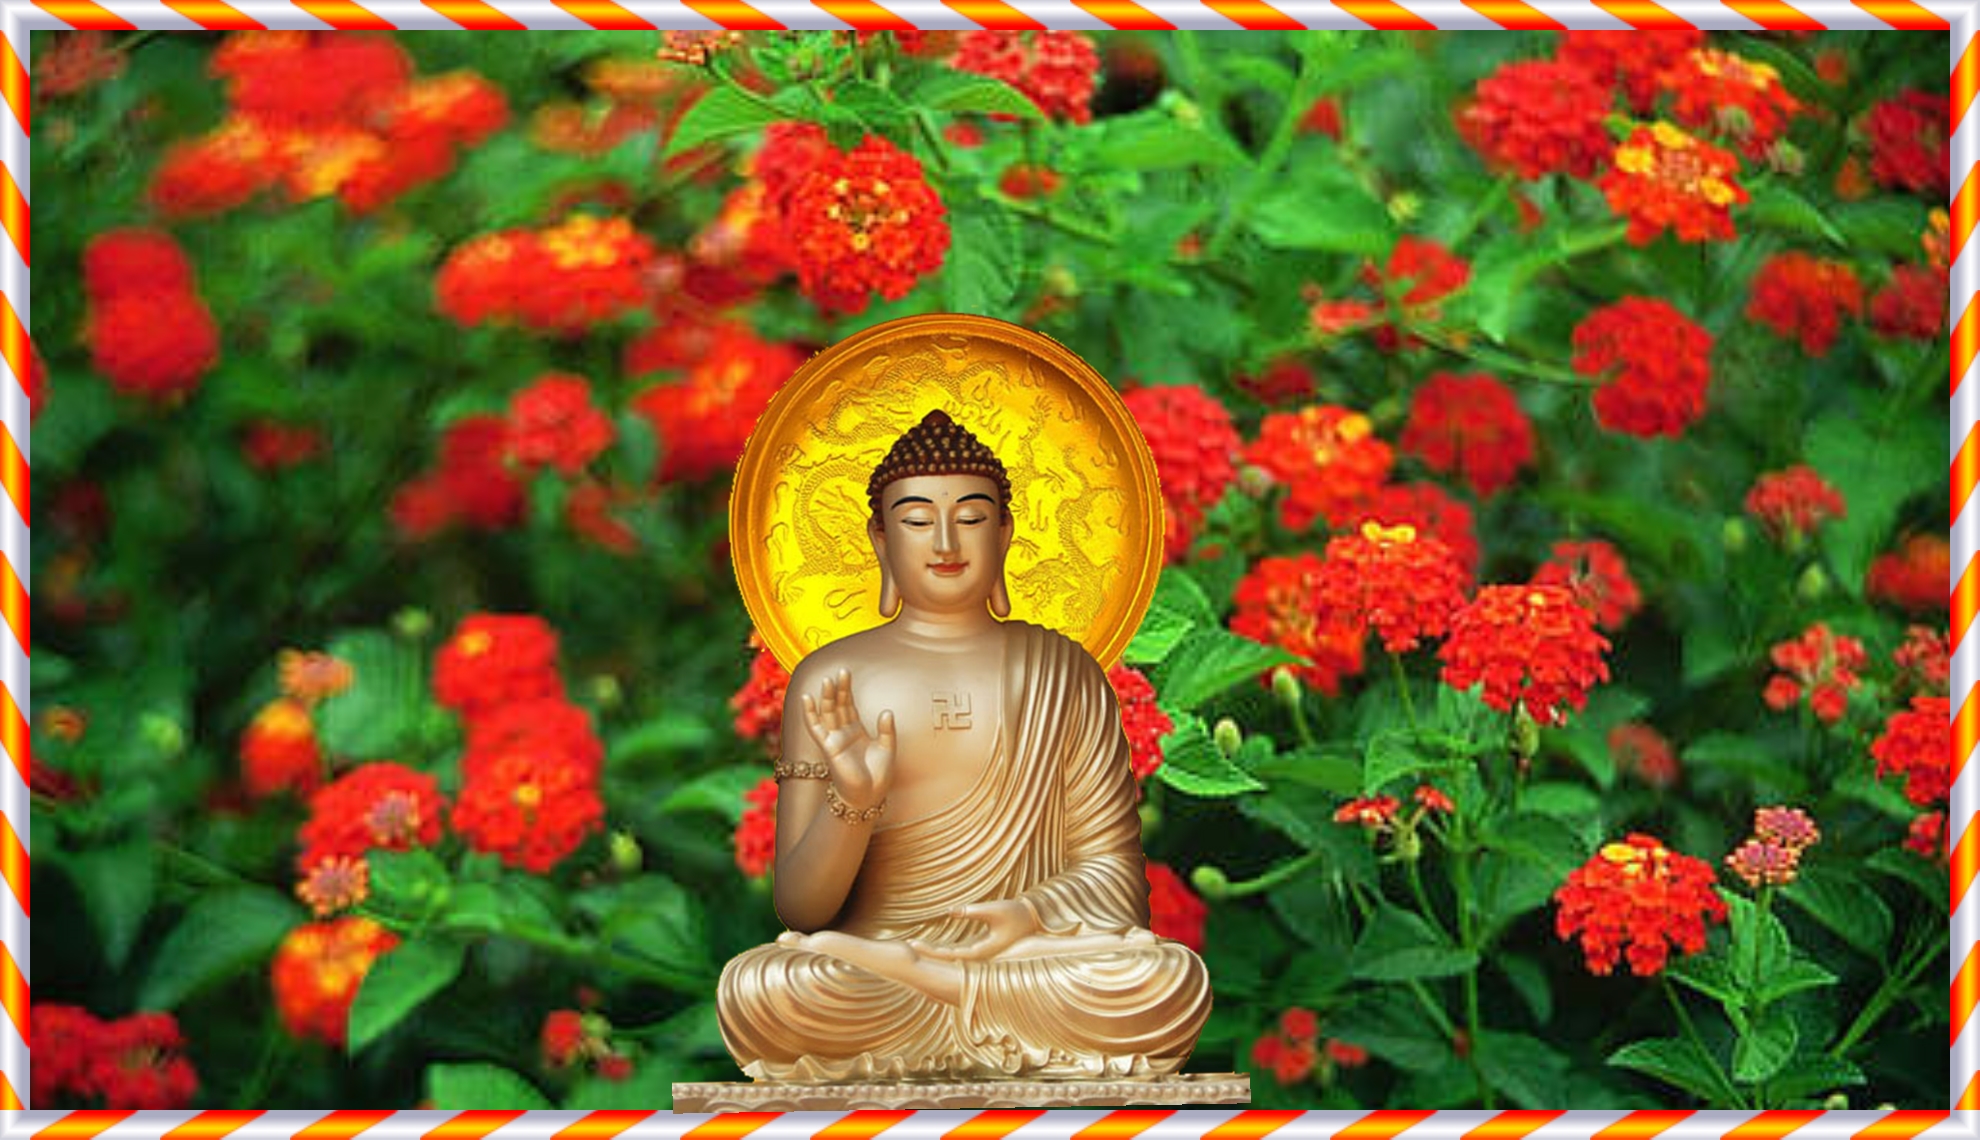 Khám phá Phật A Di Đà với video Full HD sống động. Tận hưởng một trải nghiệm hiếm có ngắm nhìn vẻ đẹp hoàn hảo của tượng Phật A Di Đà.